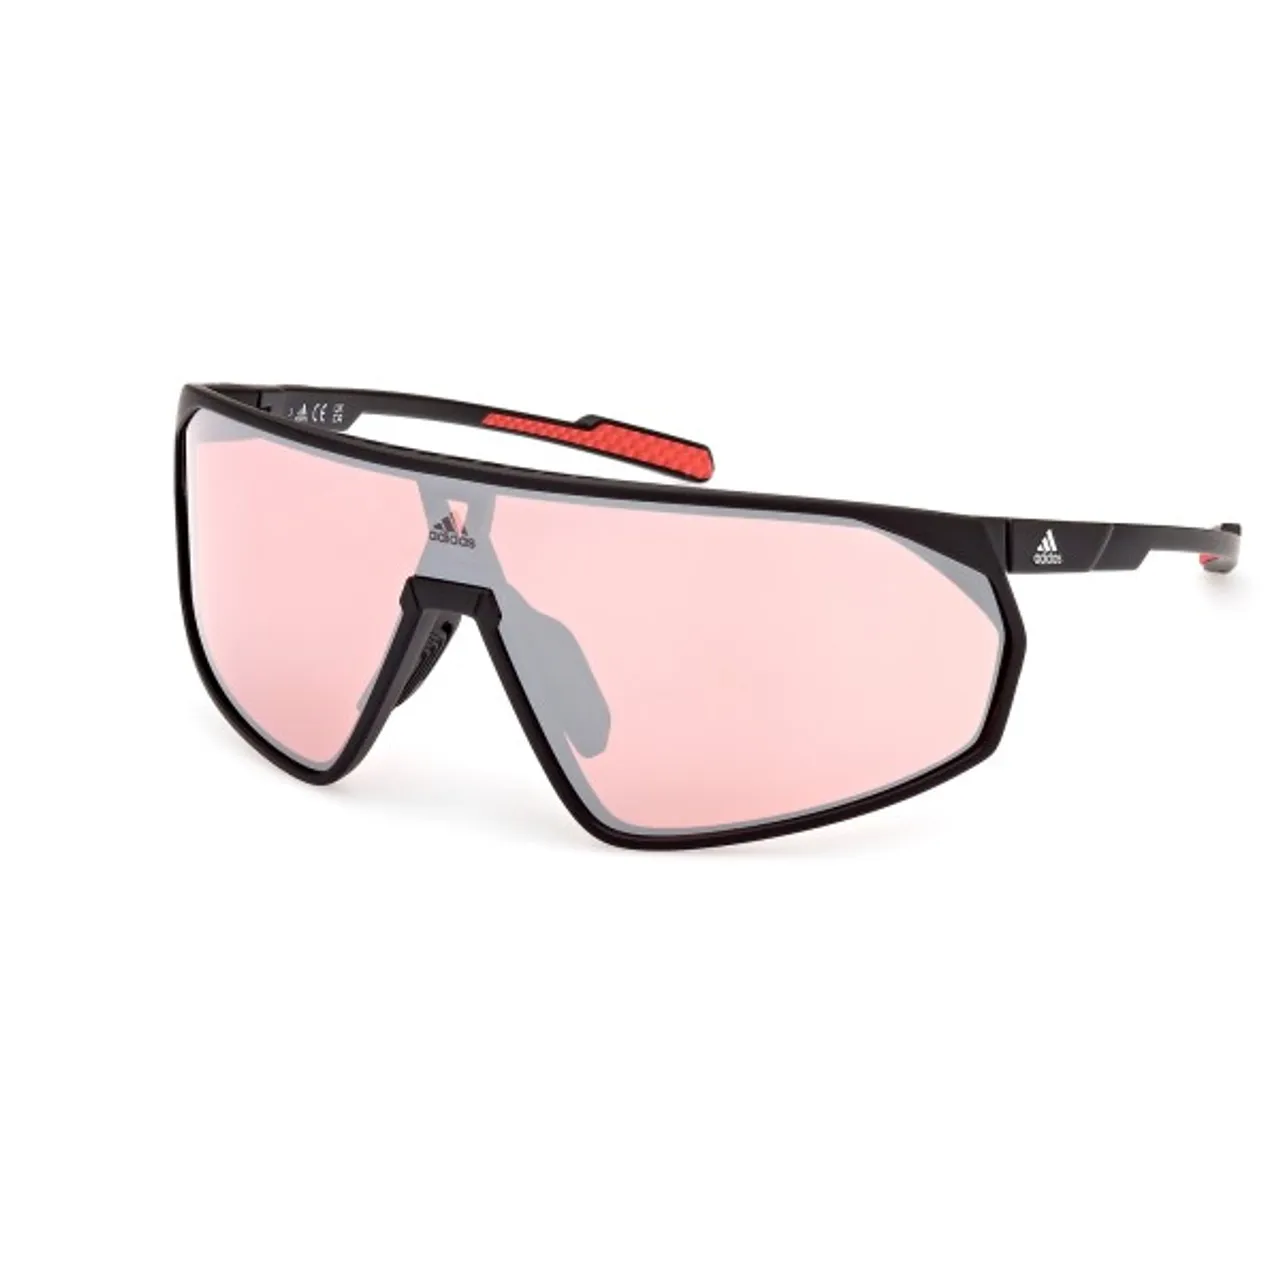 adidas eyewear - SP0074 Cat. 2 (VLT 28%) - Fahrradbrille rosa